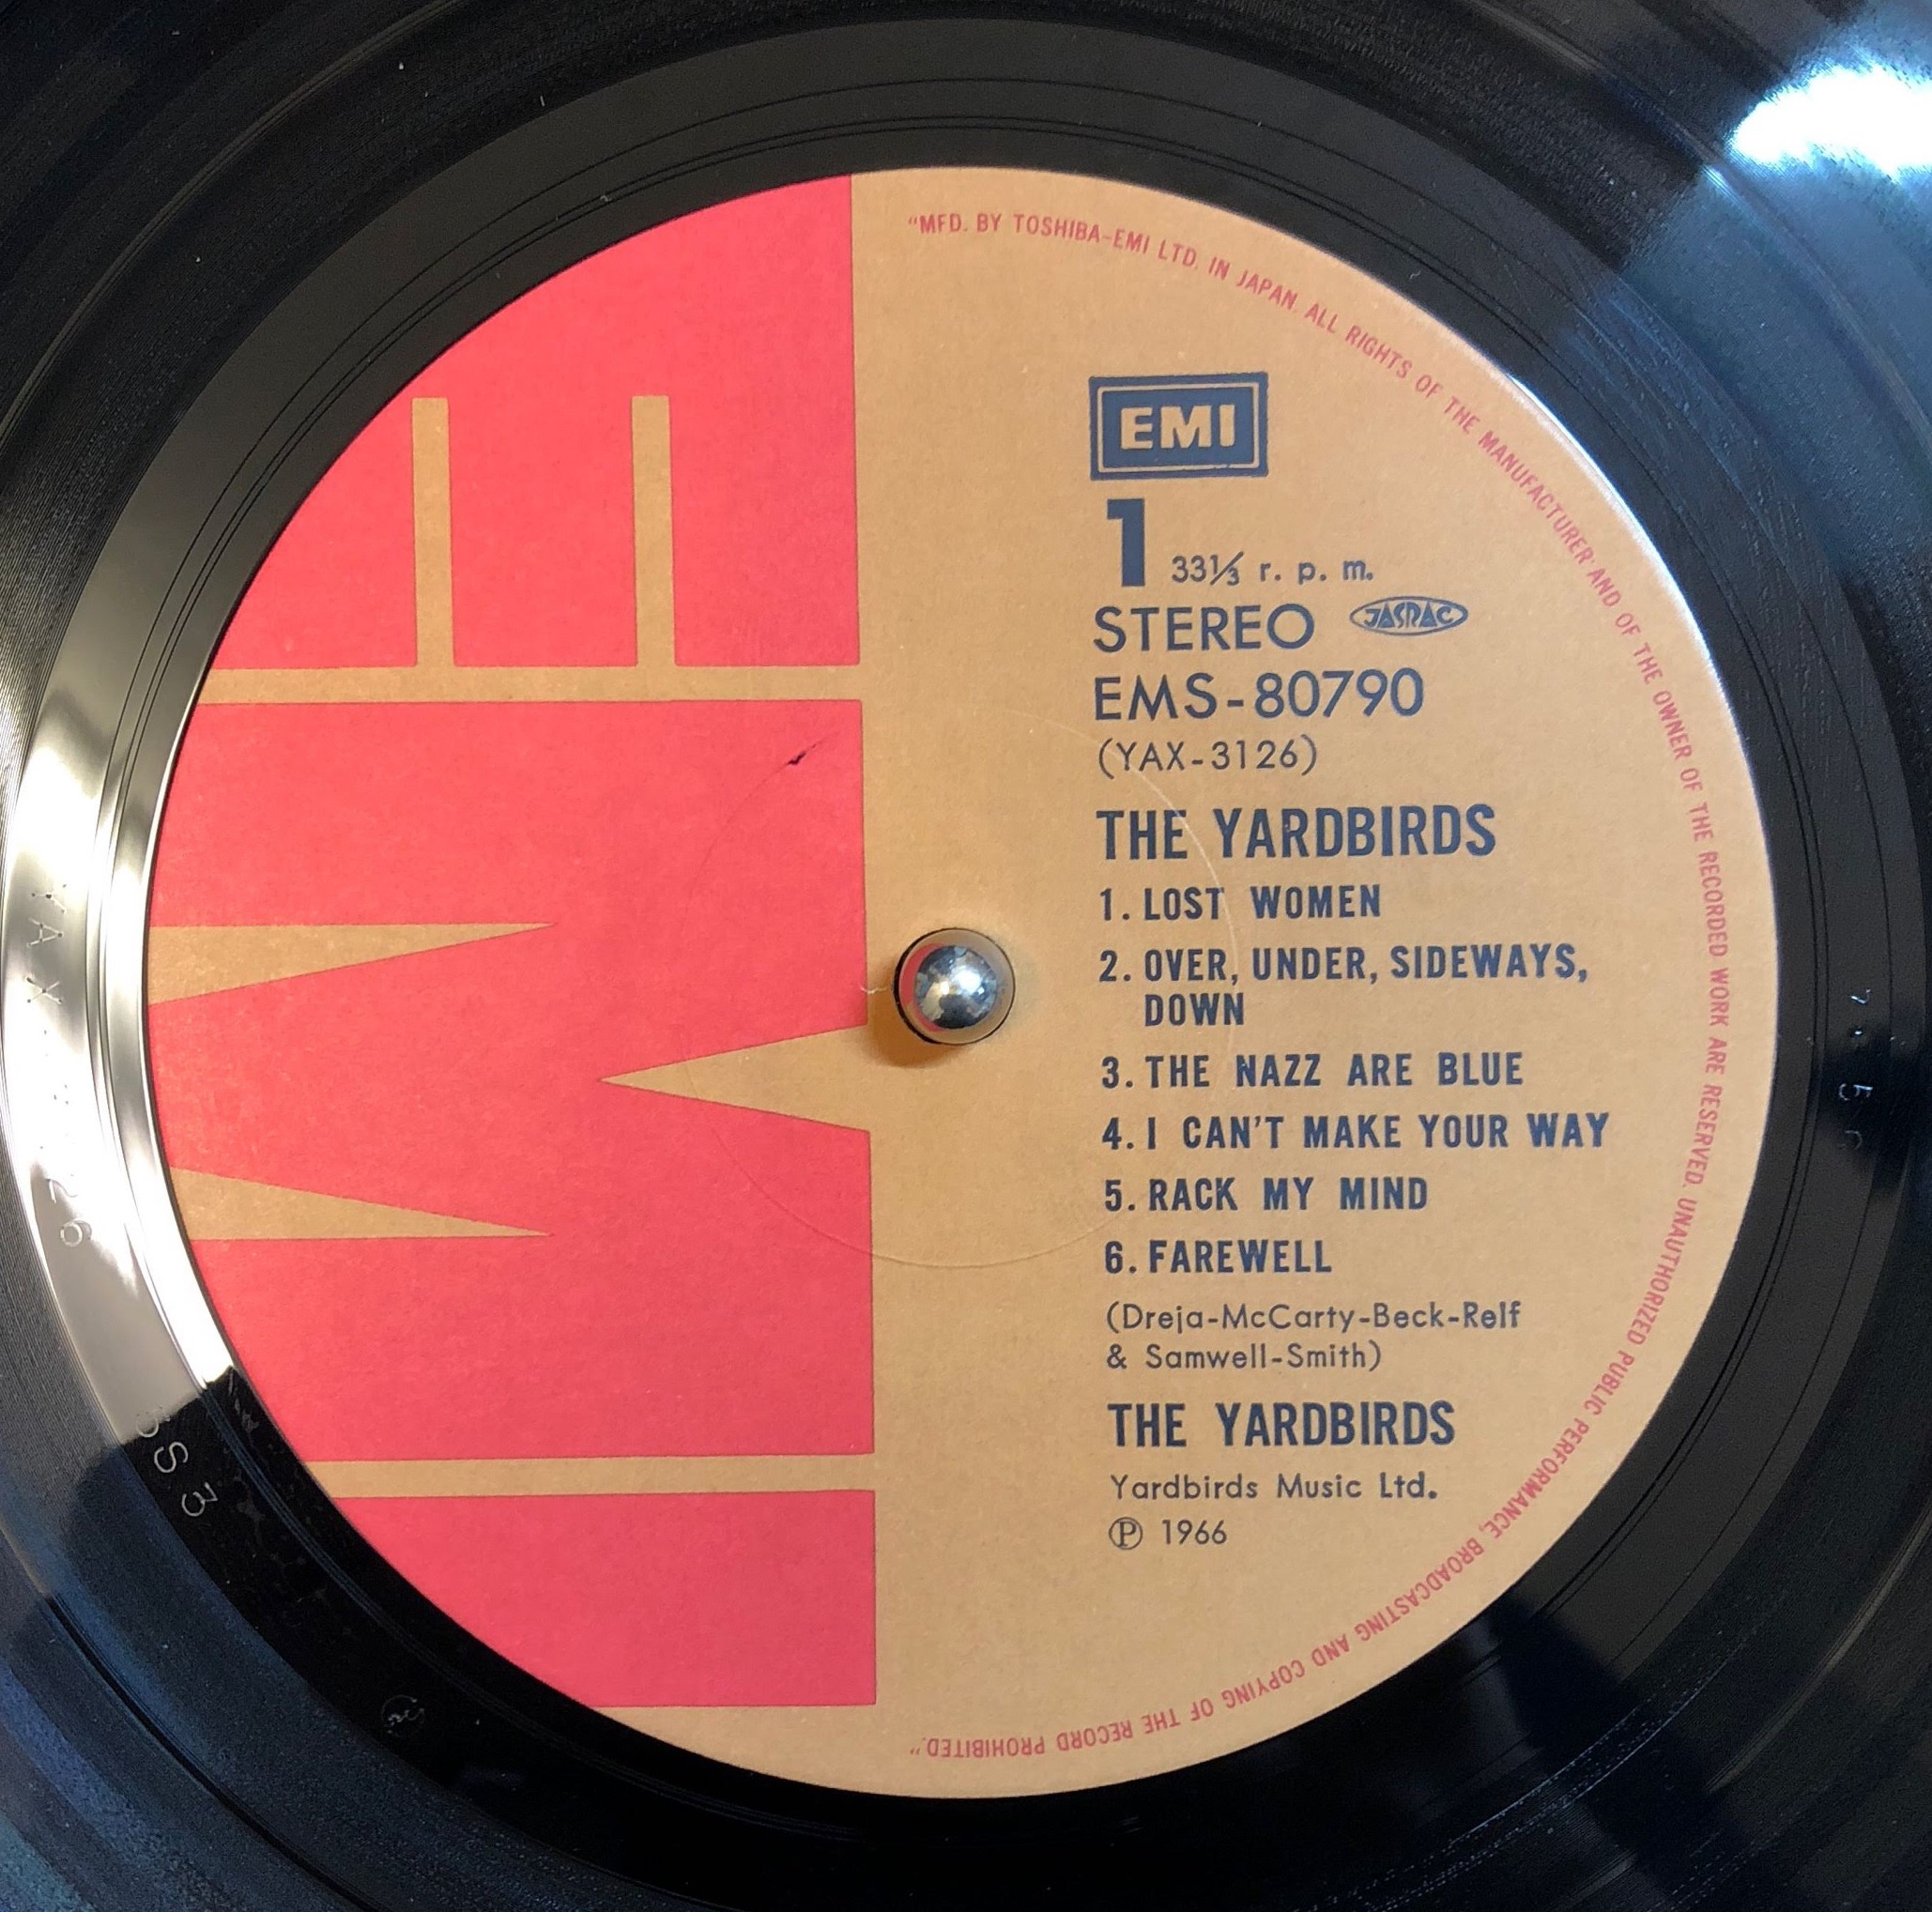 Yardbirds ‎– The Yardbirds | 中古レコード通販・買取のアカル・レコーズ